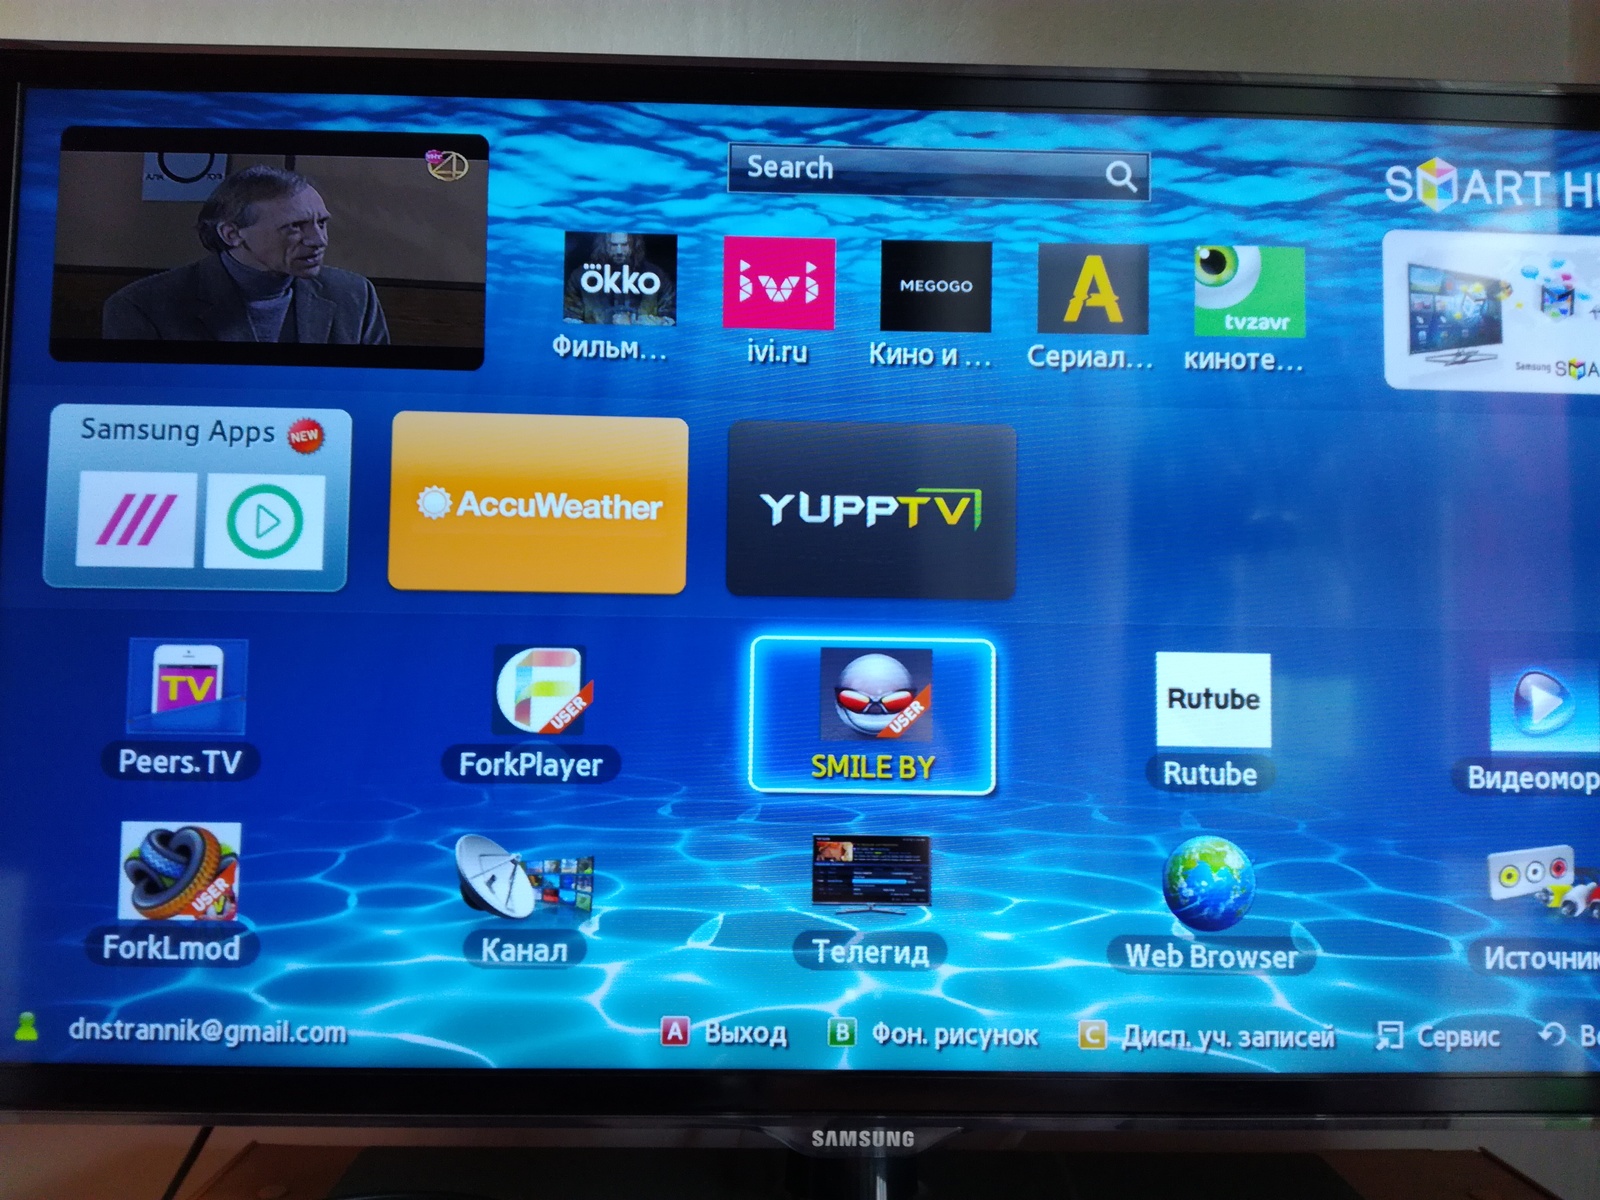 Как установить кинопоиск на самсунг смарт тв. Телевизор Samsung смарт ТВ каналы. Samsung apps для Smart TV. Телевизор самсунг не смарт ТВ. ТВ приставка самсунг смарт ТВ.